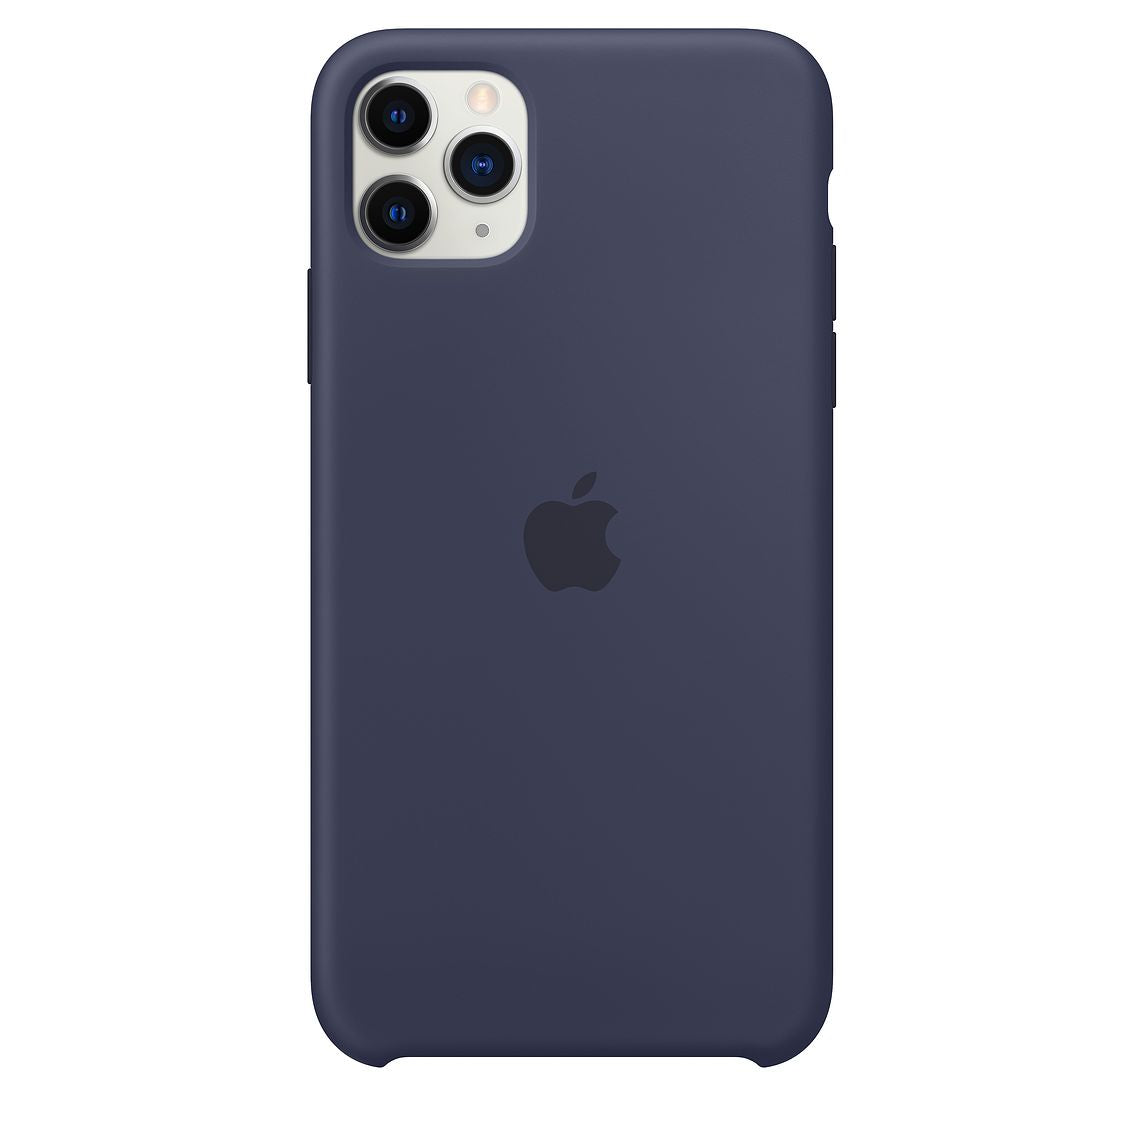 Apple Carcasa de Silicona para iPhone 11 Pro Azul Noche